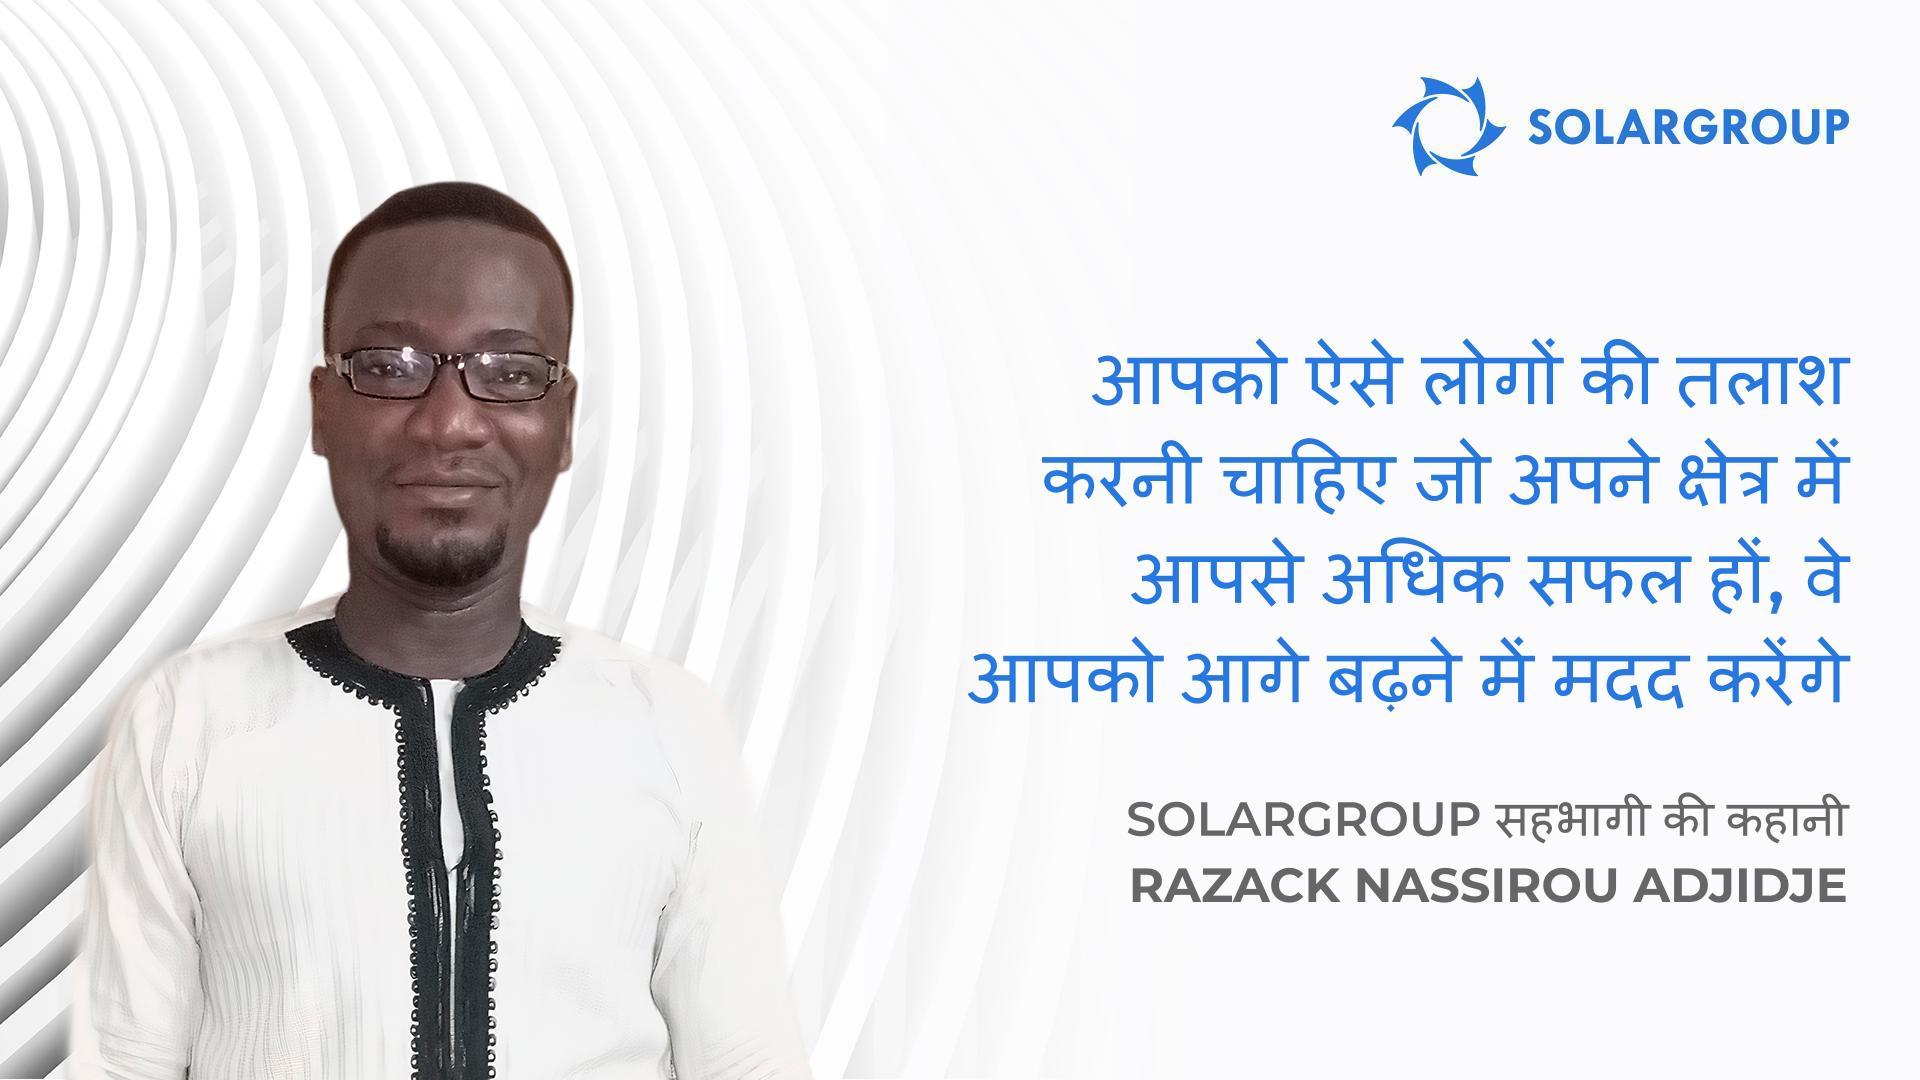 सफल कंपनियां सफल लोगों से बनती हैं | SOLARGROUP के सहभागी Razack Nassirou Adjidje की कहानी